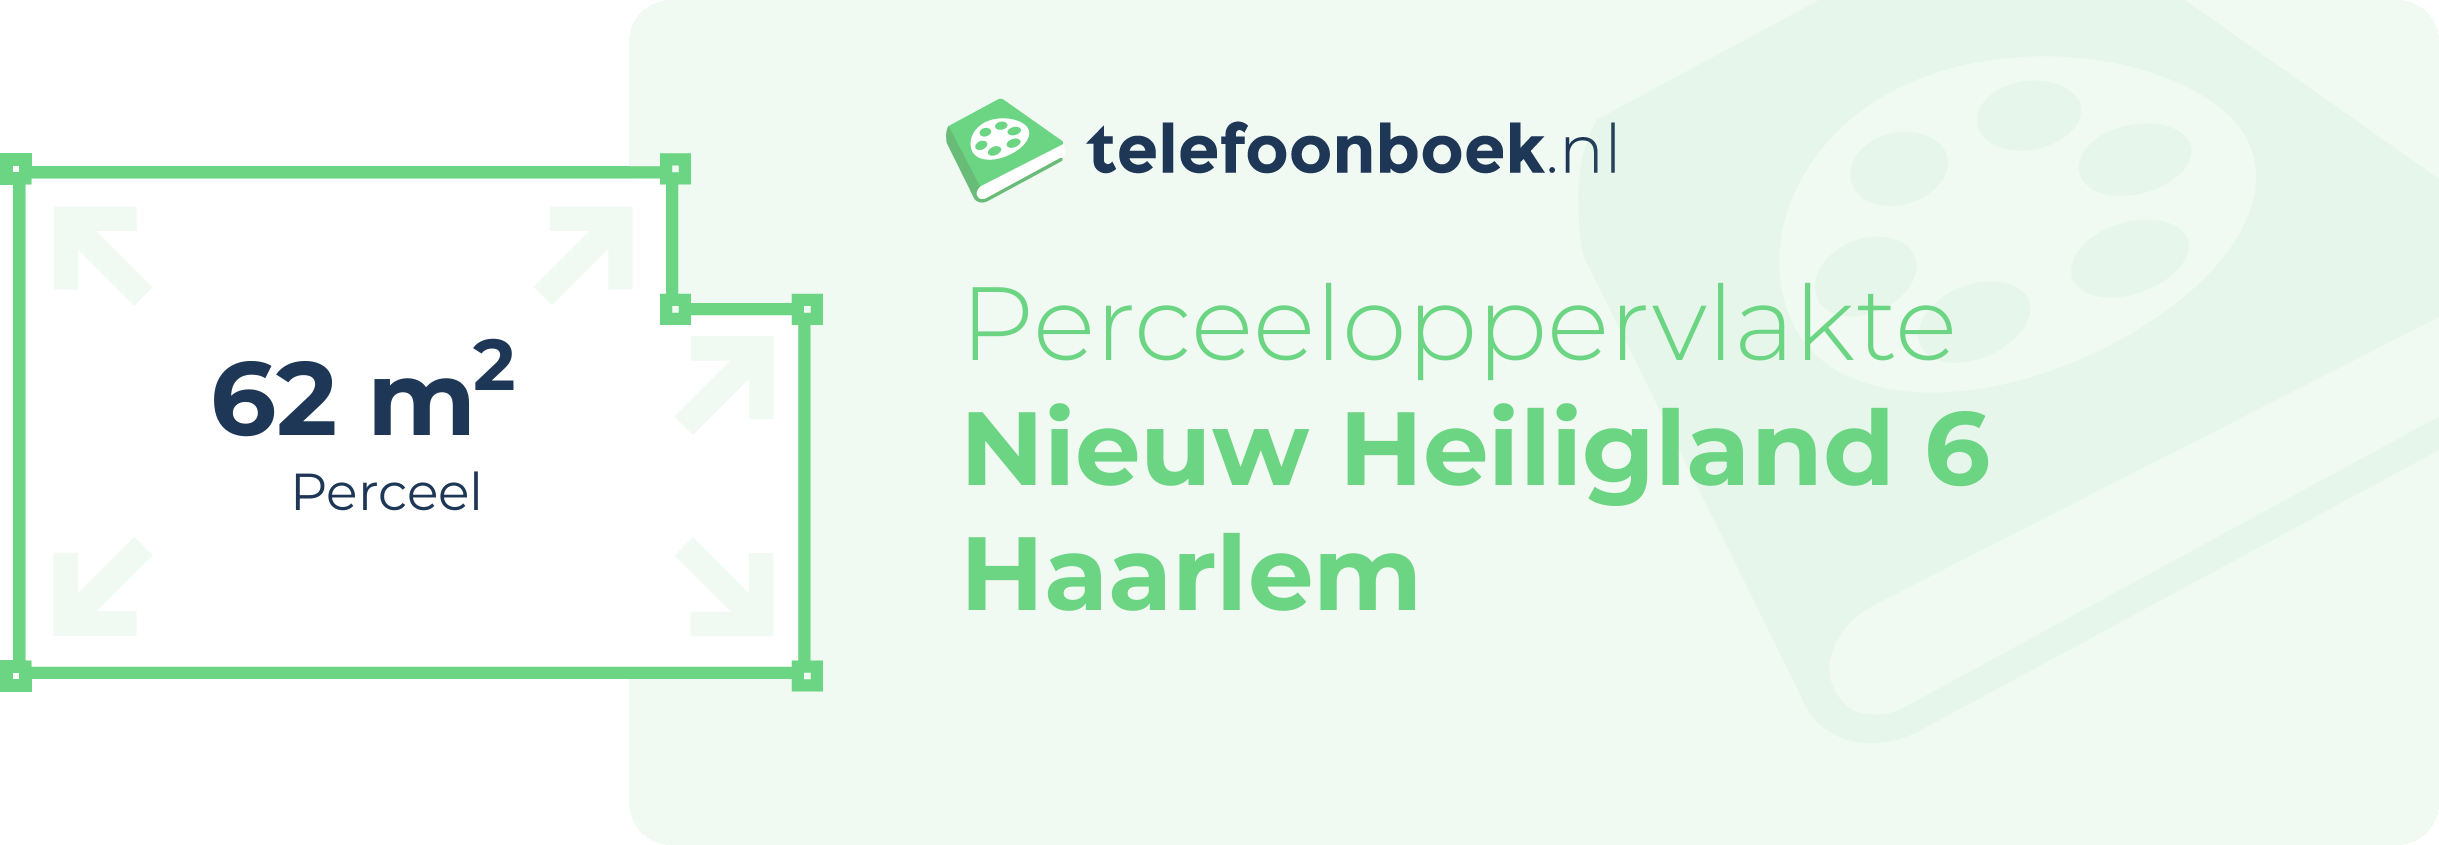 Perceeloppervlakte Nieuw Heiligland 6 Haarlem